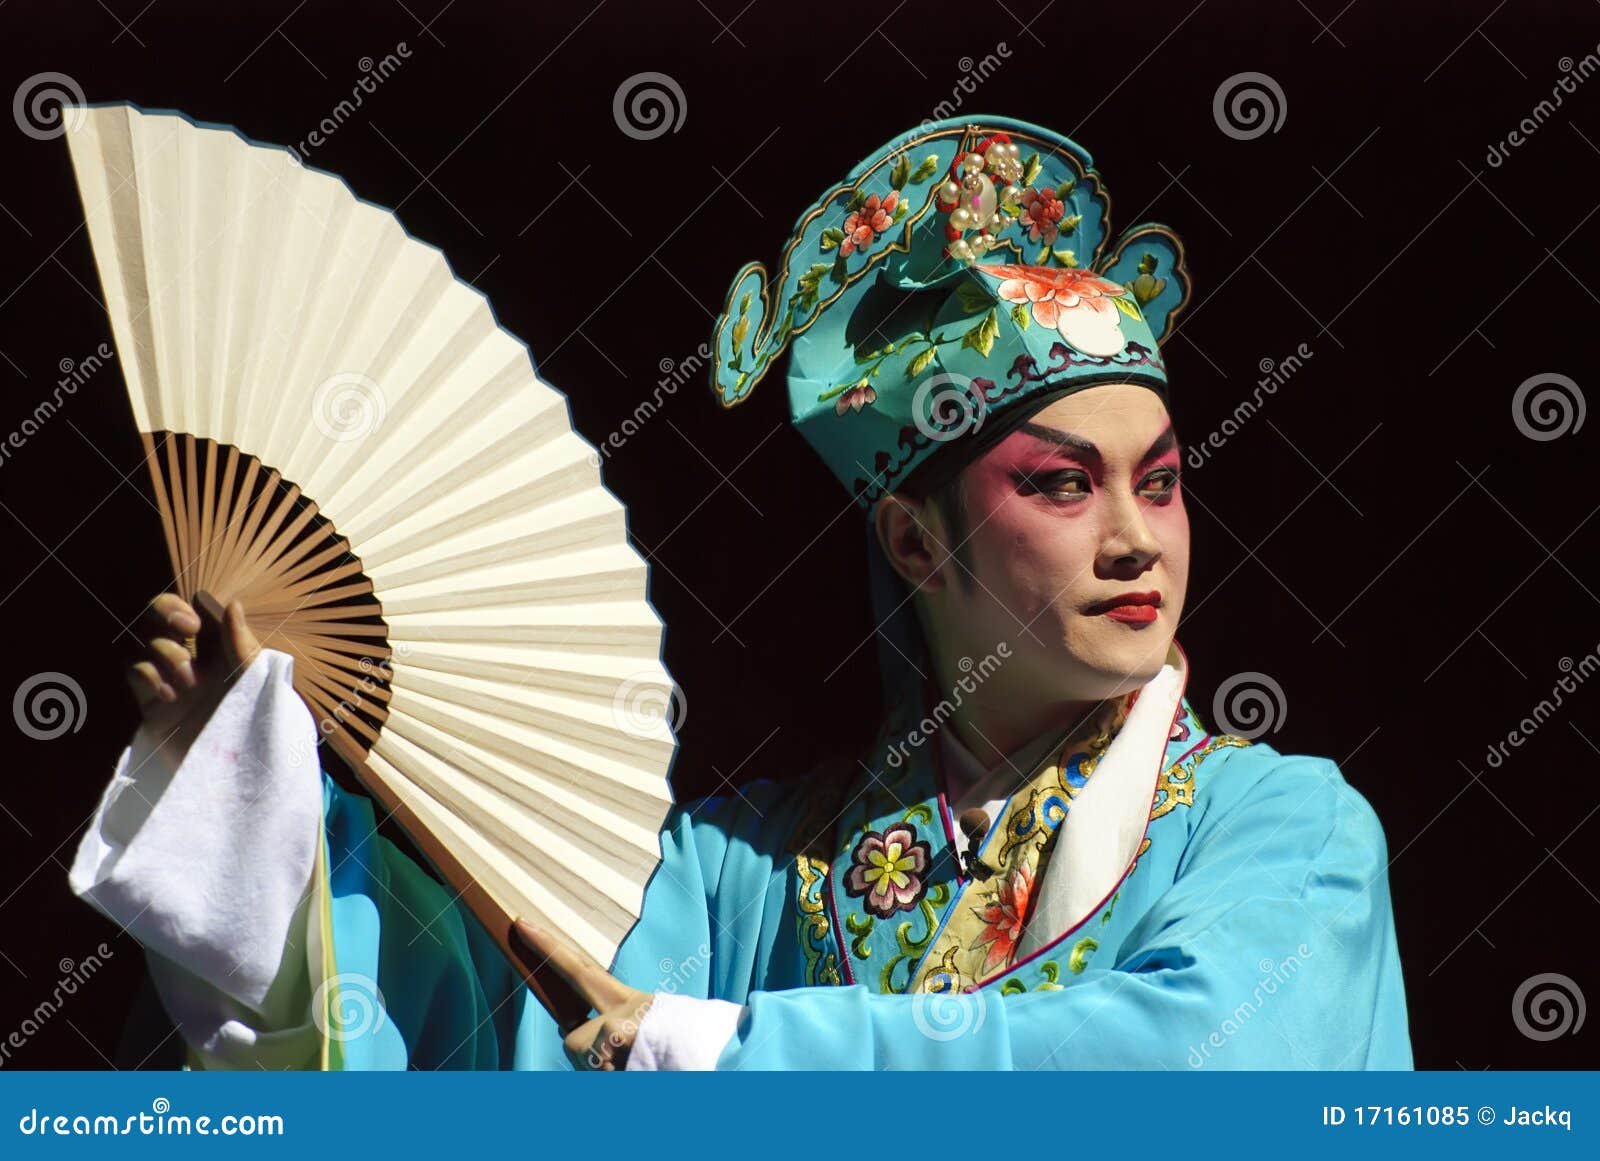 chinese opera actor